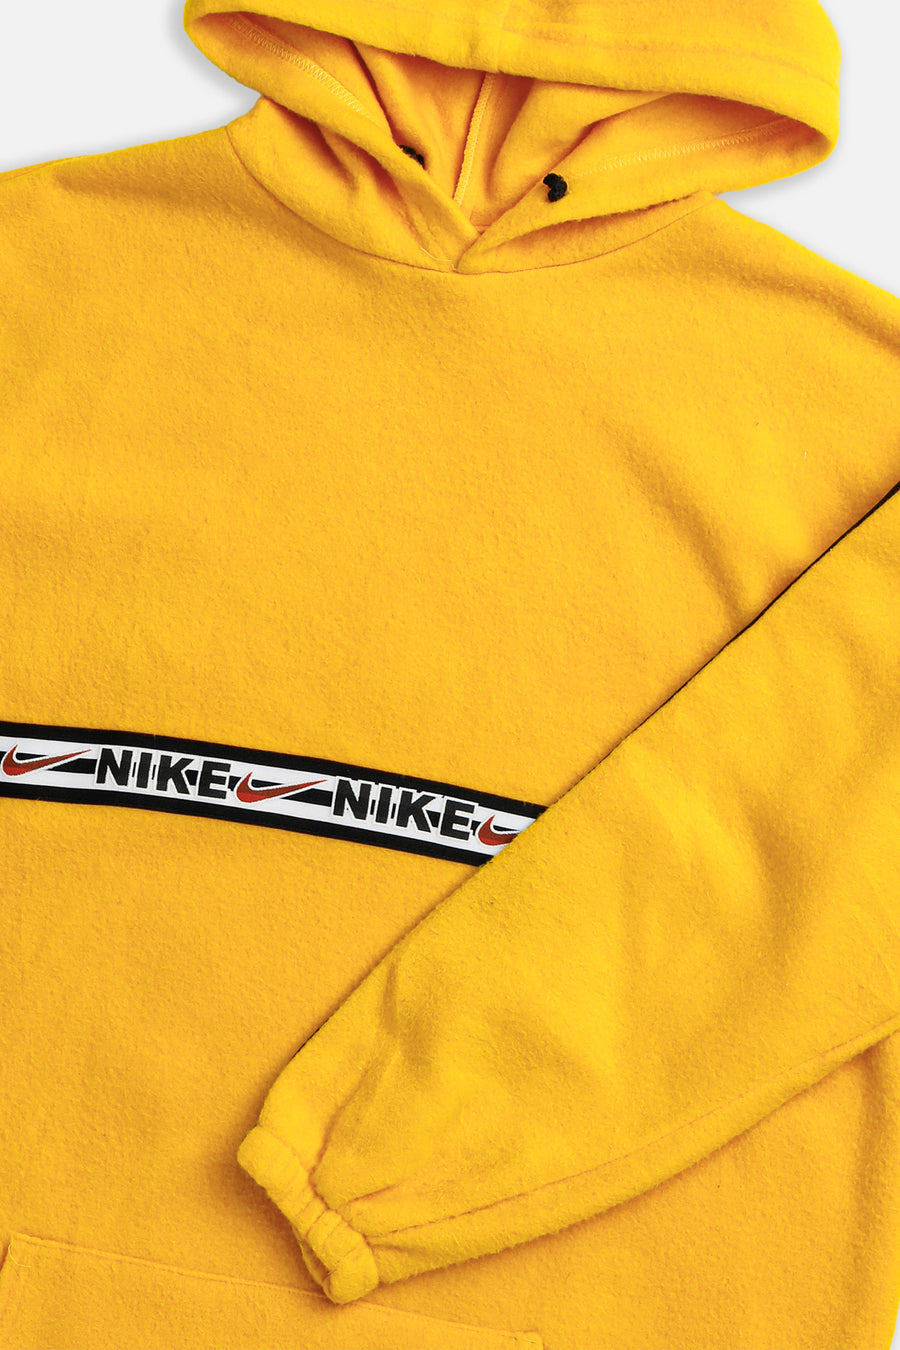 Vintage Nike Fleece Sweater - XXL